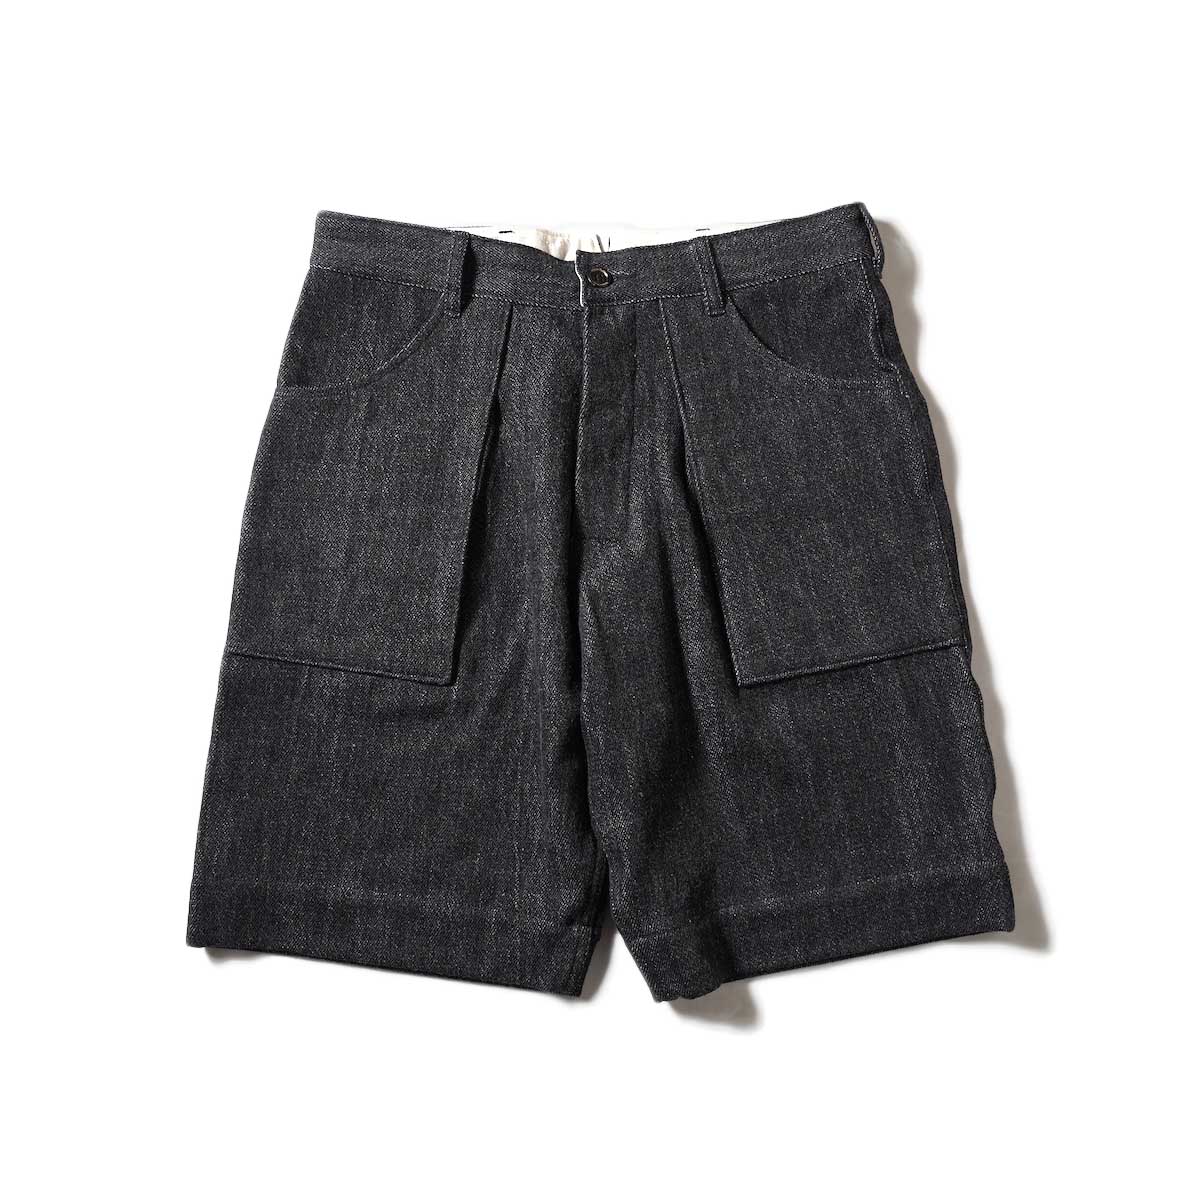 Willow Pants / P-001S - Denim Short Pants (Black Denim)